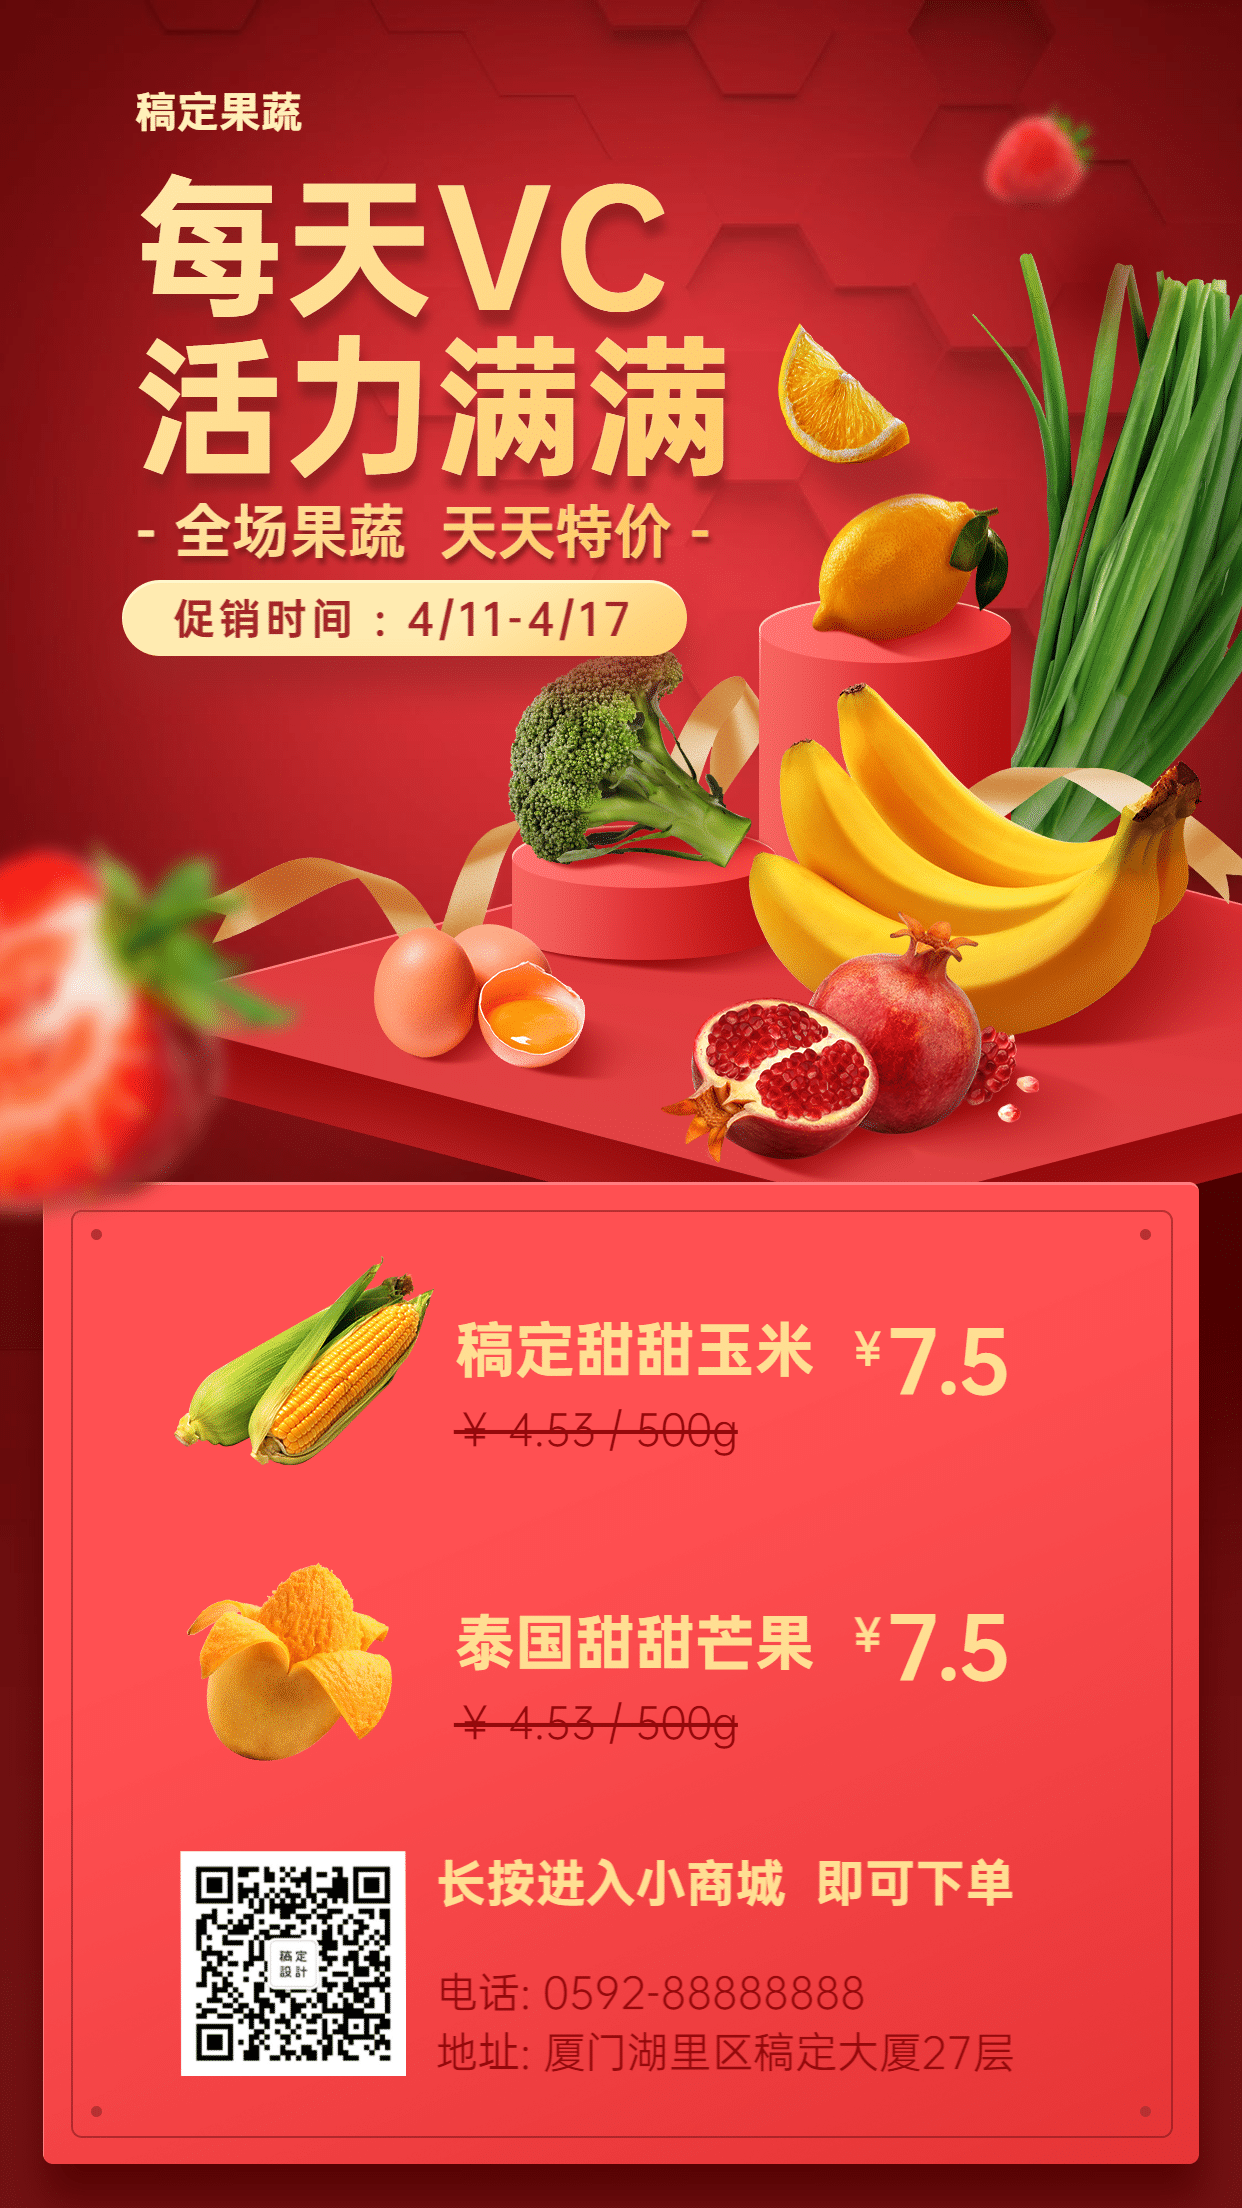 生鲜水果价格拼团促销海报预览效果